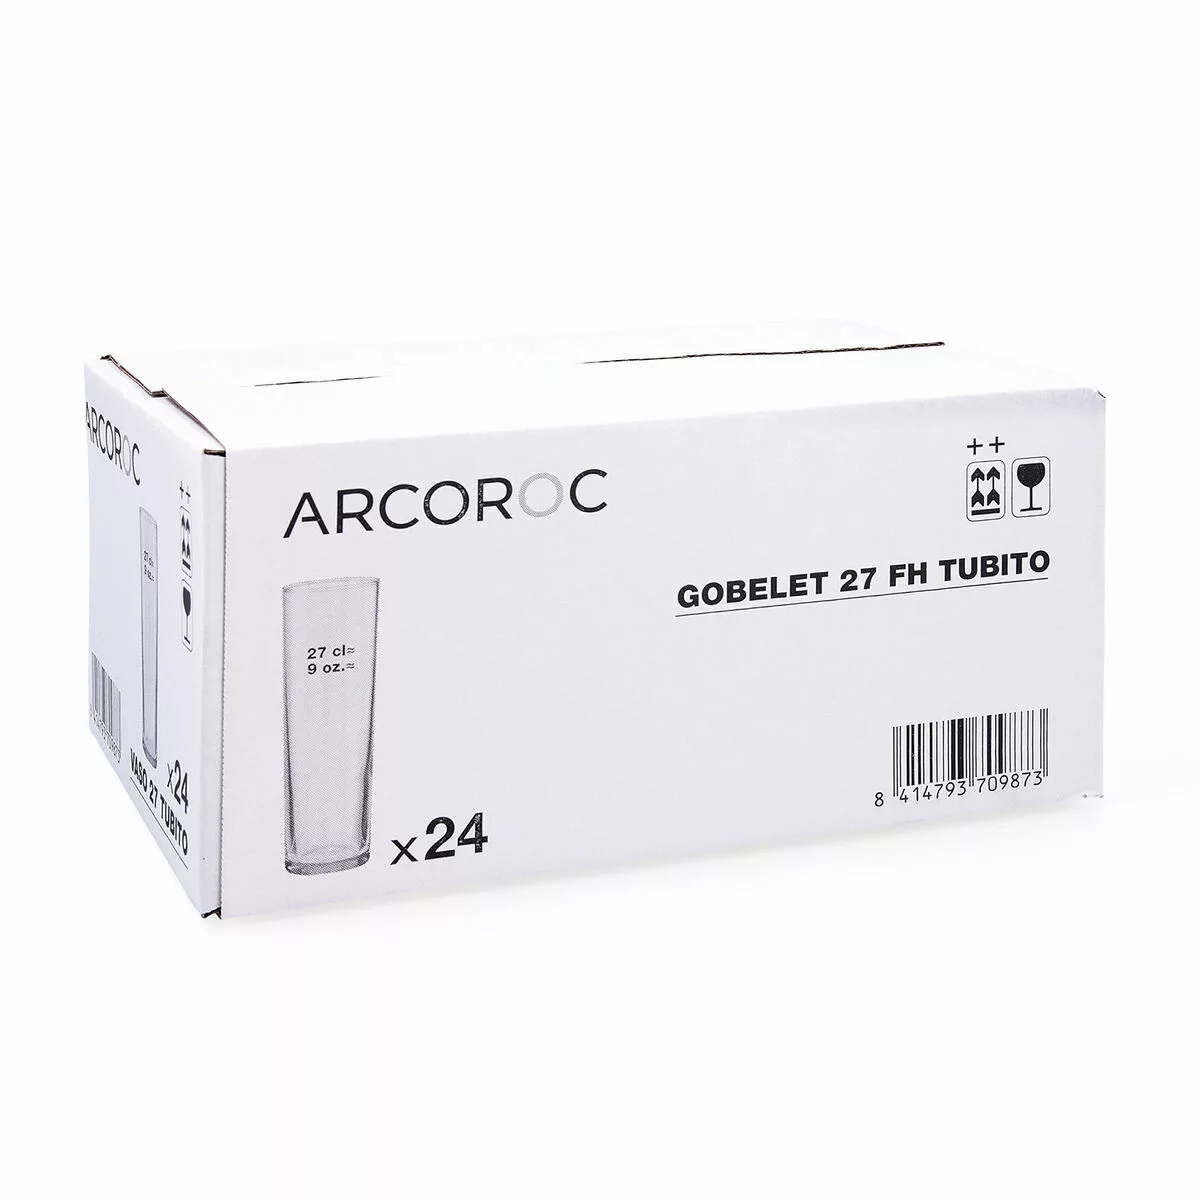 Gläserset Arcoroc   Durchsichtig Röhre 24 Stück Glas 270 Ml günstig online kaufen